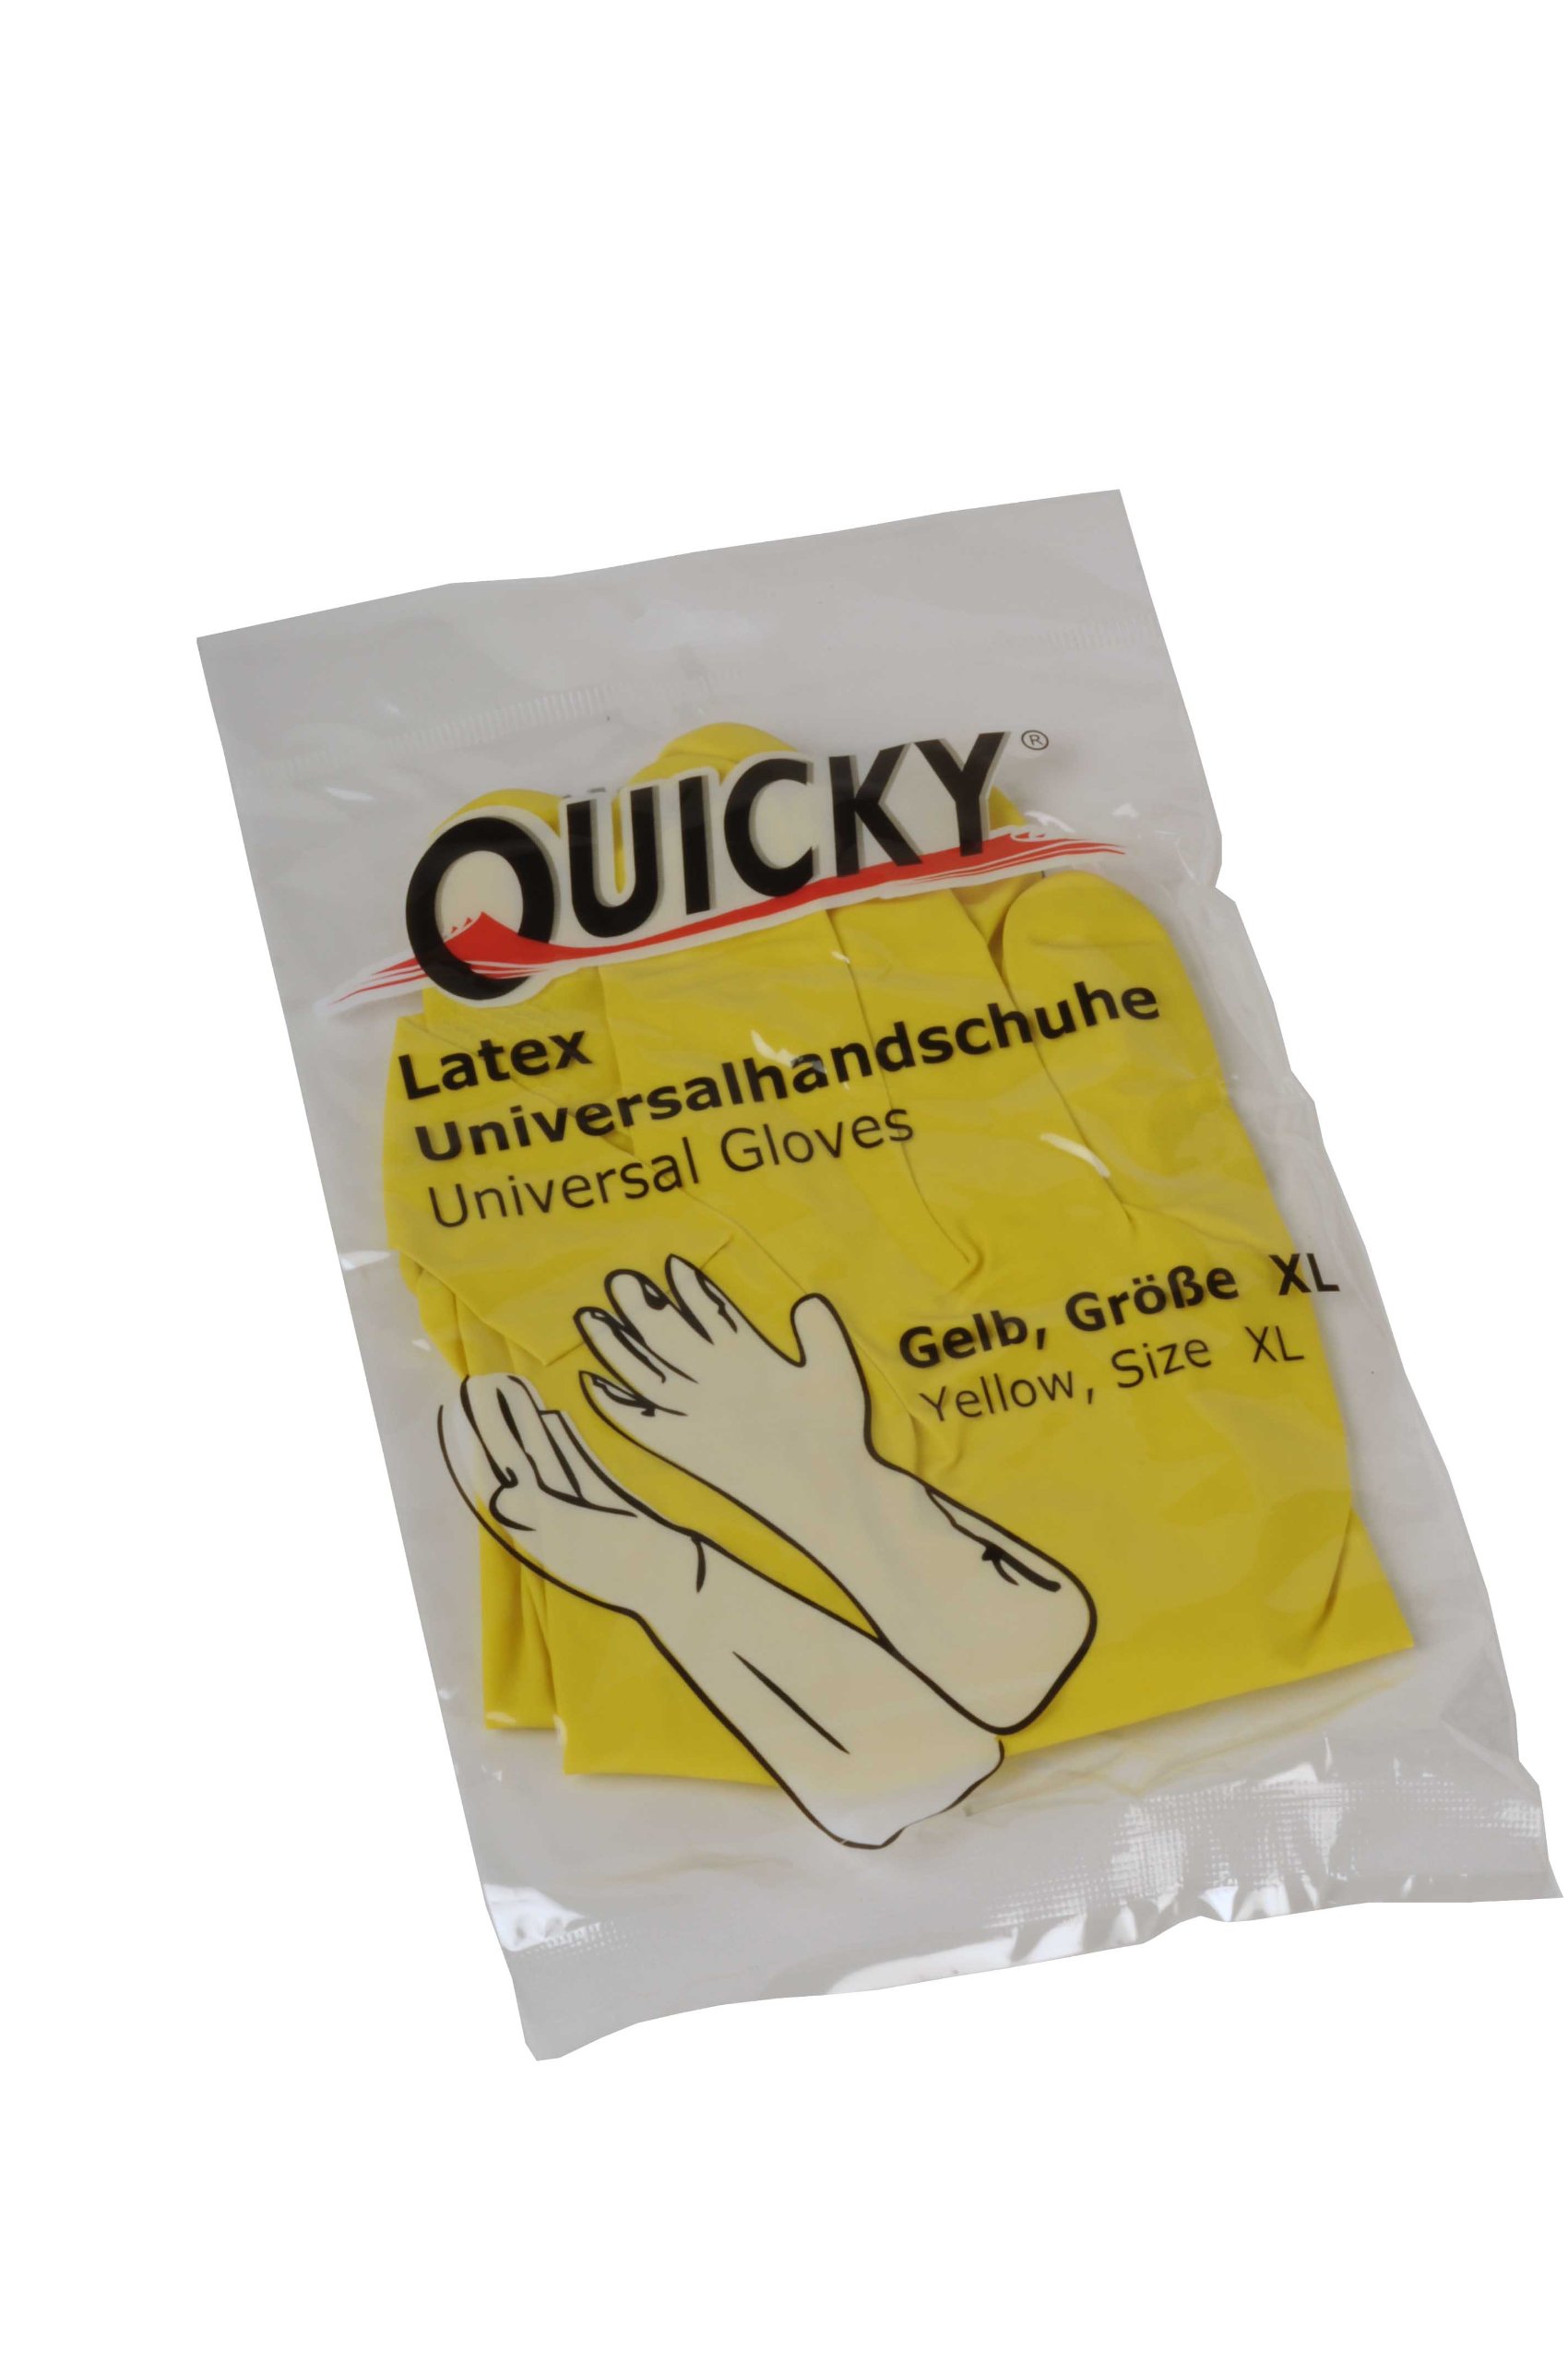 Quicky Universalhandschuhe aus Latex, Größe XL, gelb, innen leicht Baumwollbeflockt, 144er Pack (144 x 1 Paar)